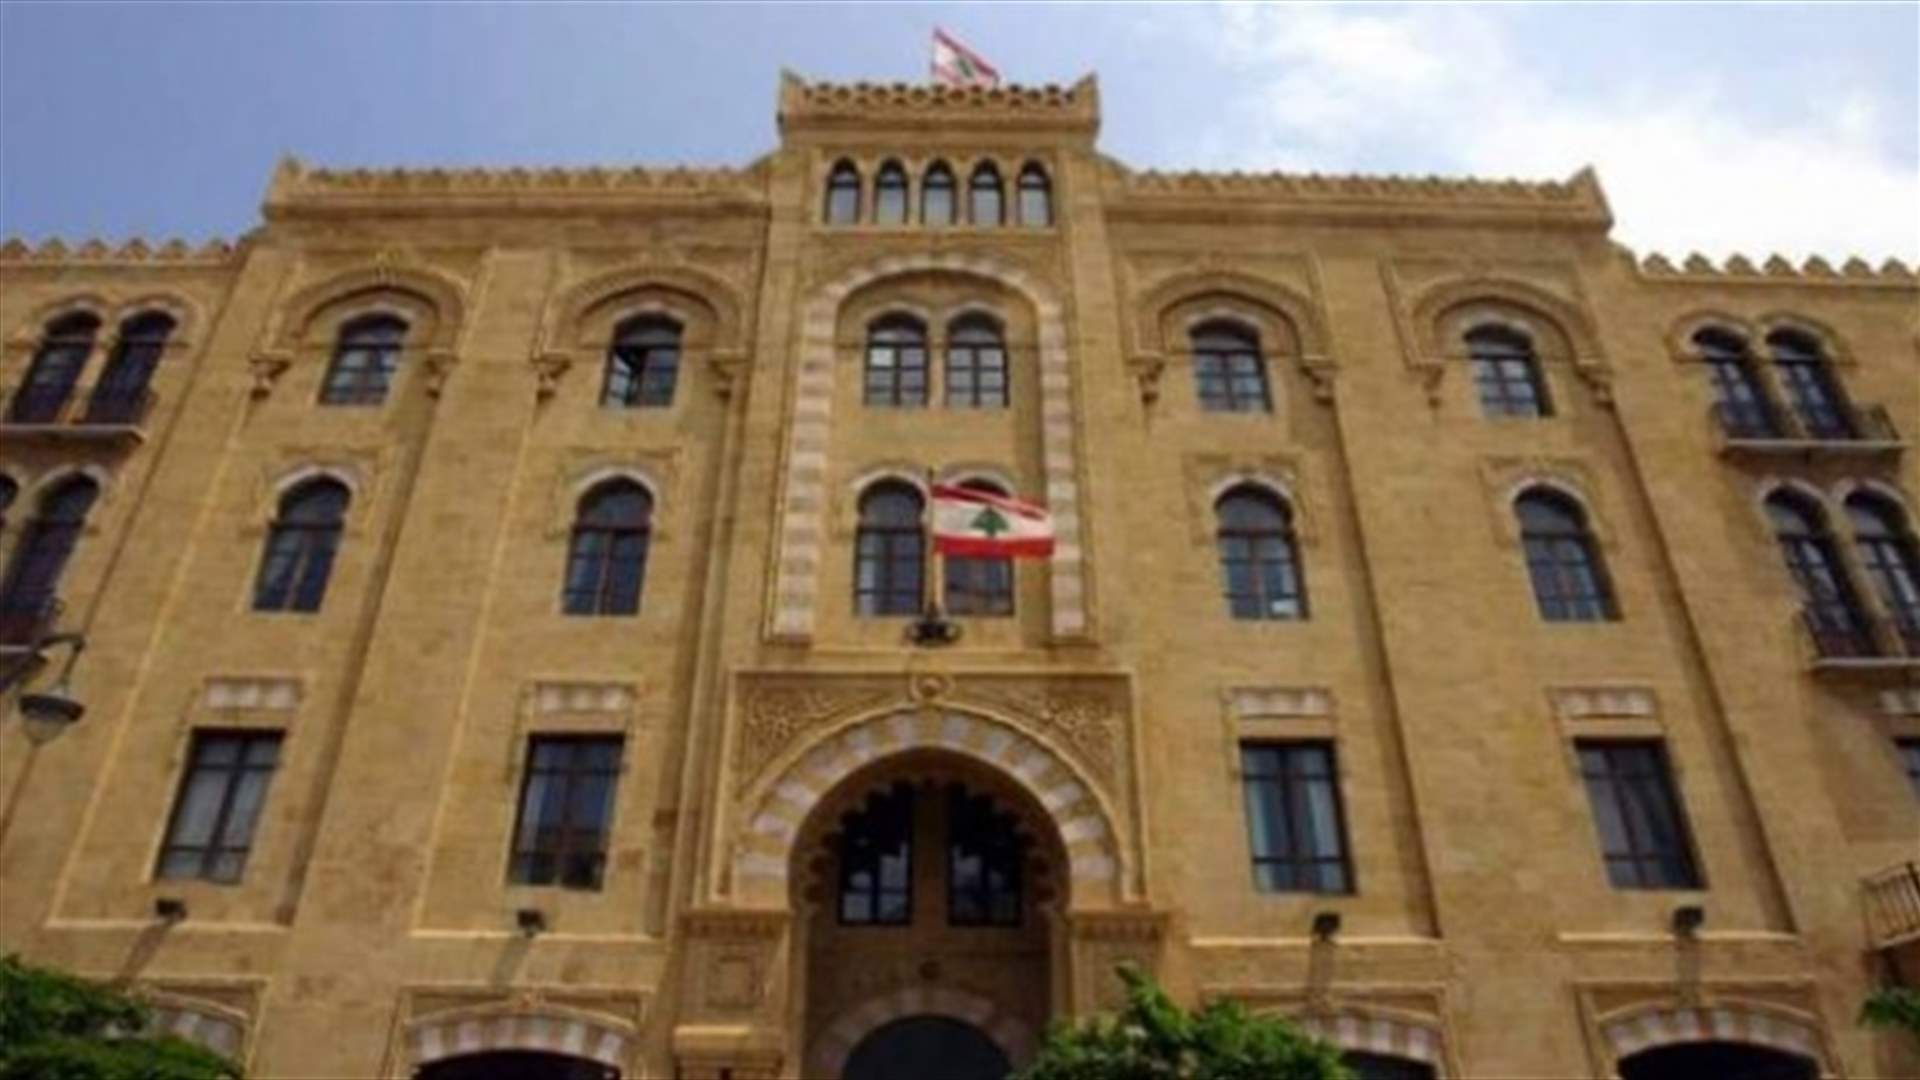 بعد إدعاء القاضي إبراهيم على موظف في بلدية بيروت... زهران: سنتقدم بملف كامل عن الهدر في البلدية